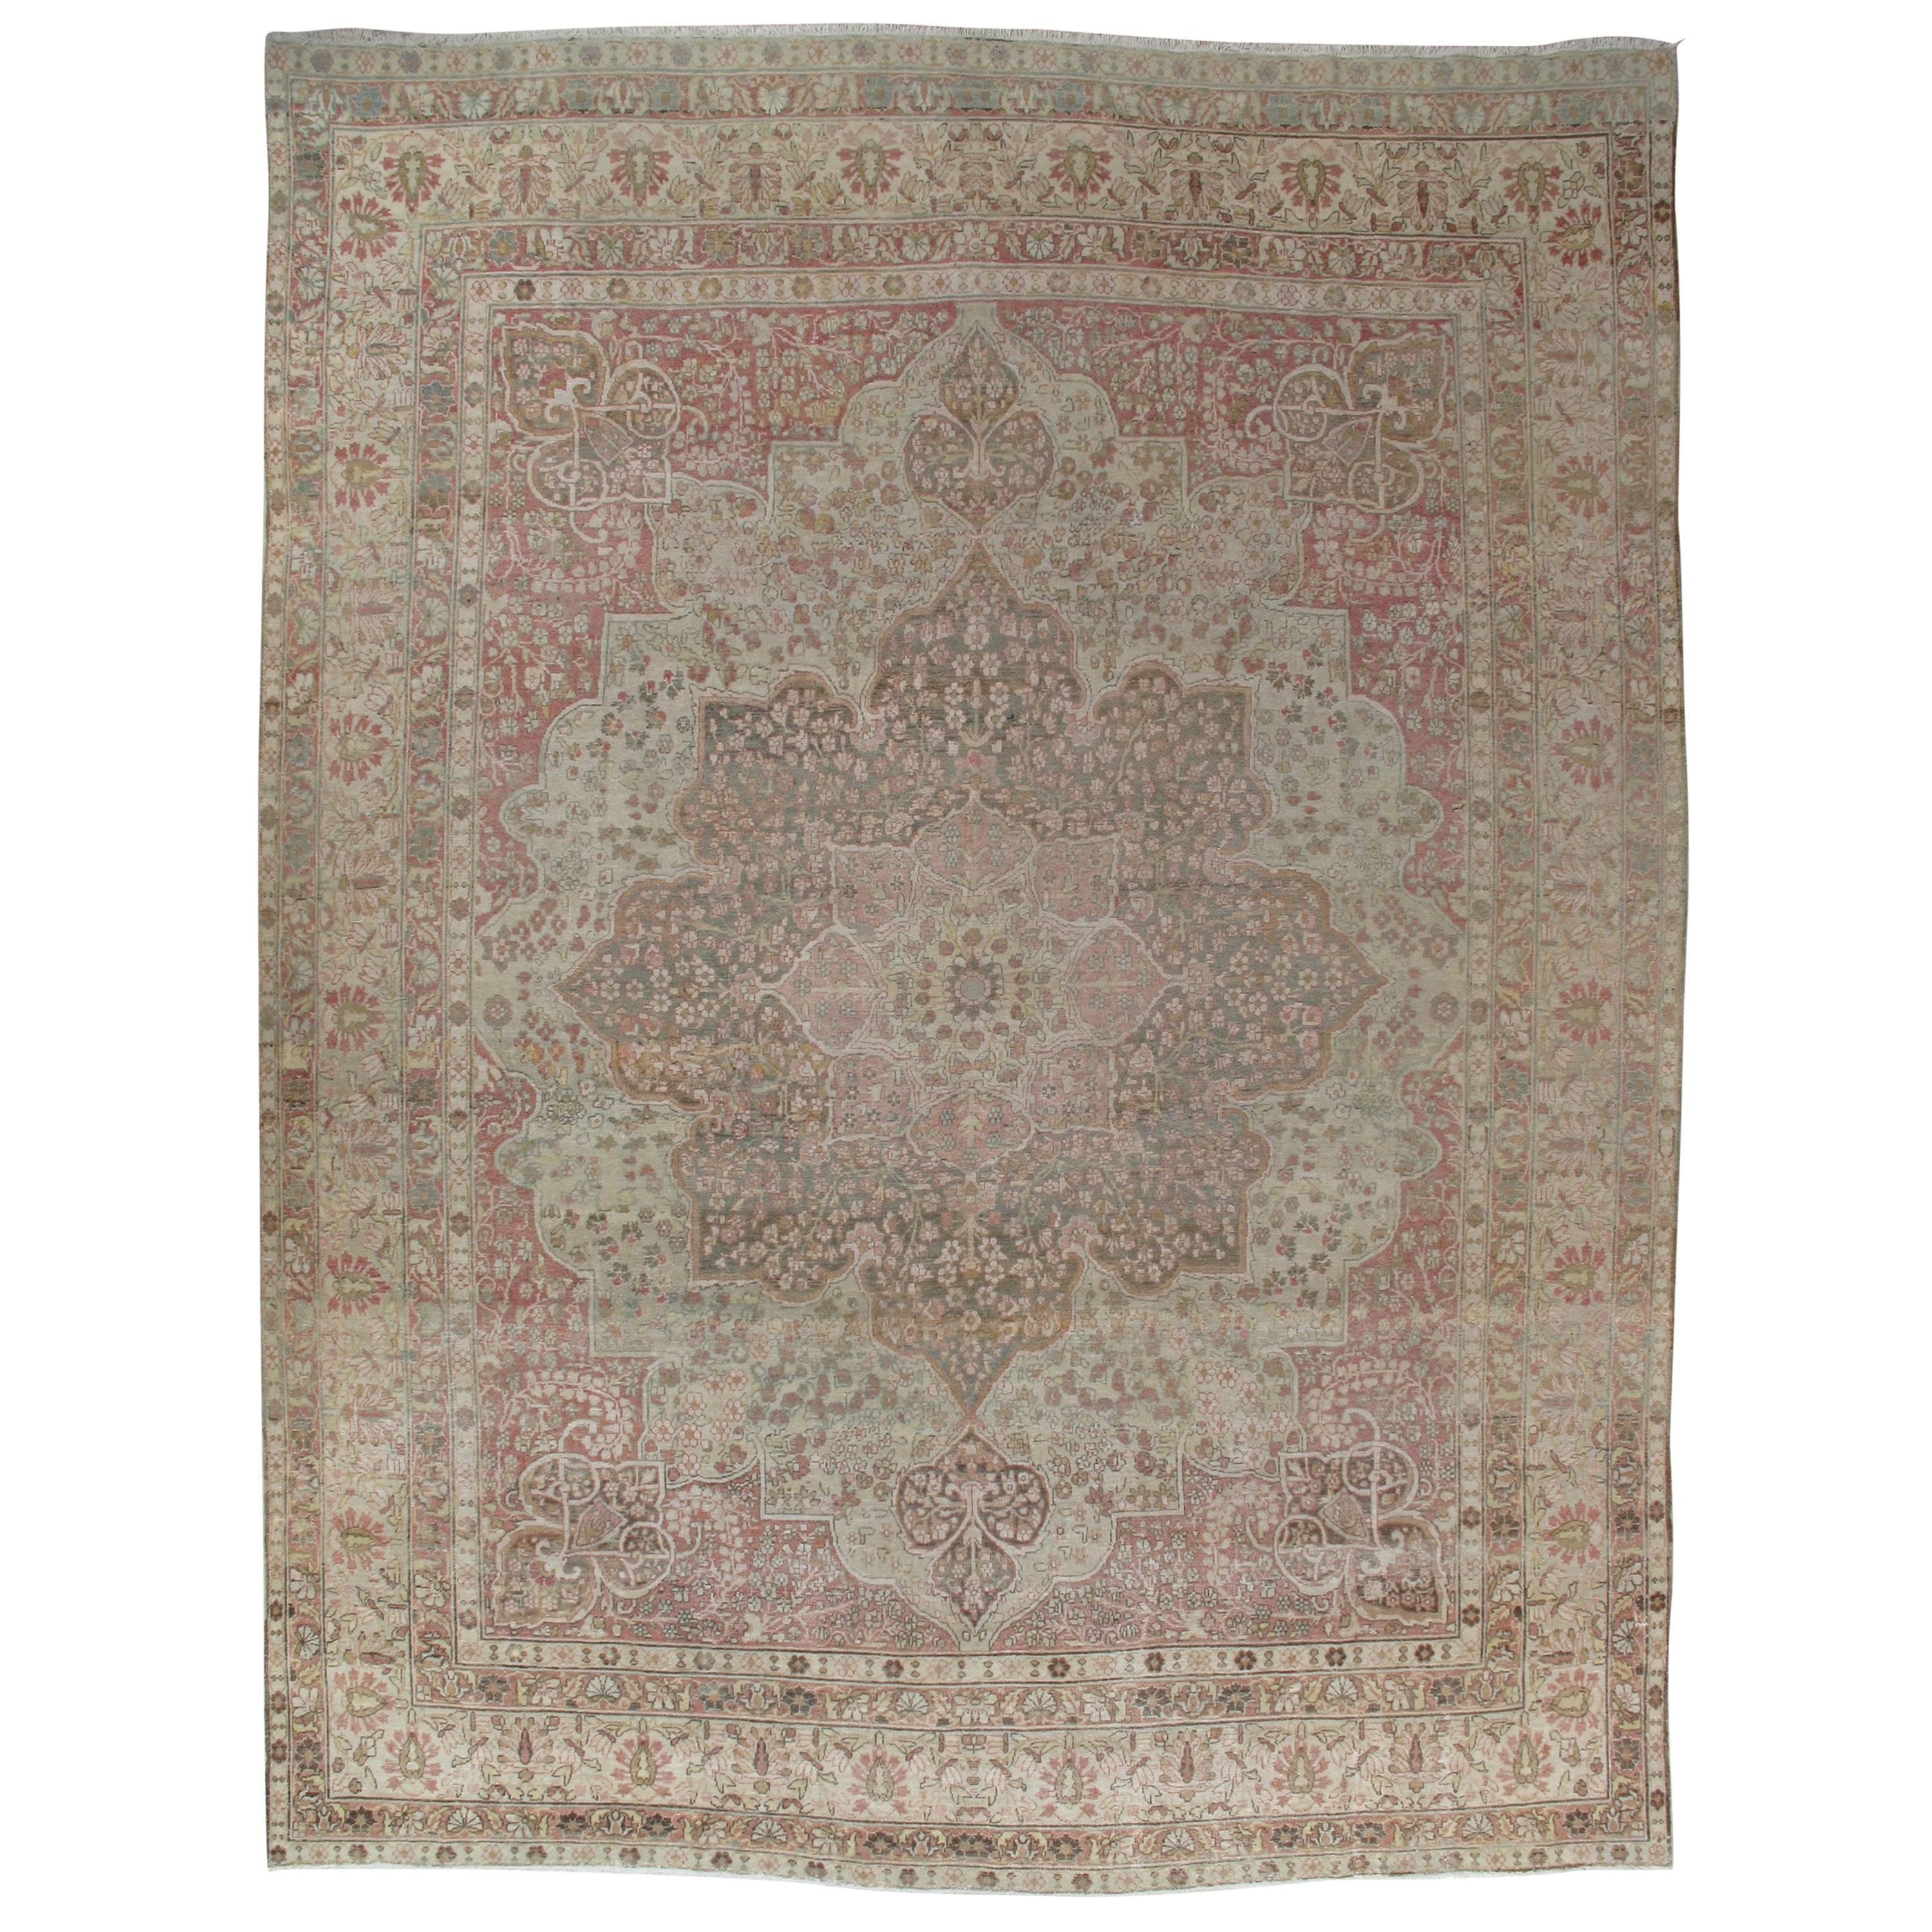 Antique Lavar Kerman Carpet, Soft Pastel Colors, Ivory, Pink, Light Gray/Blue